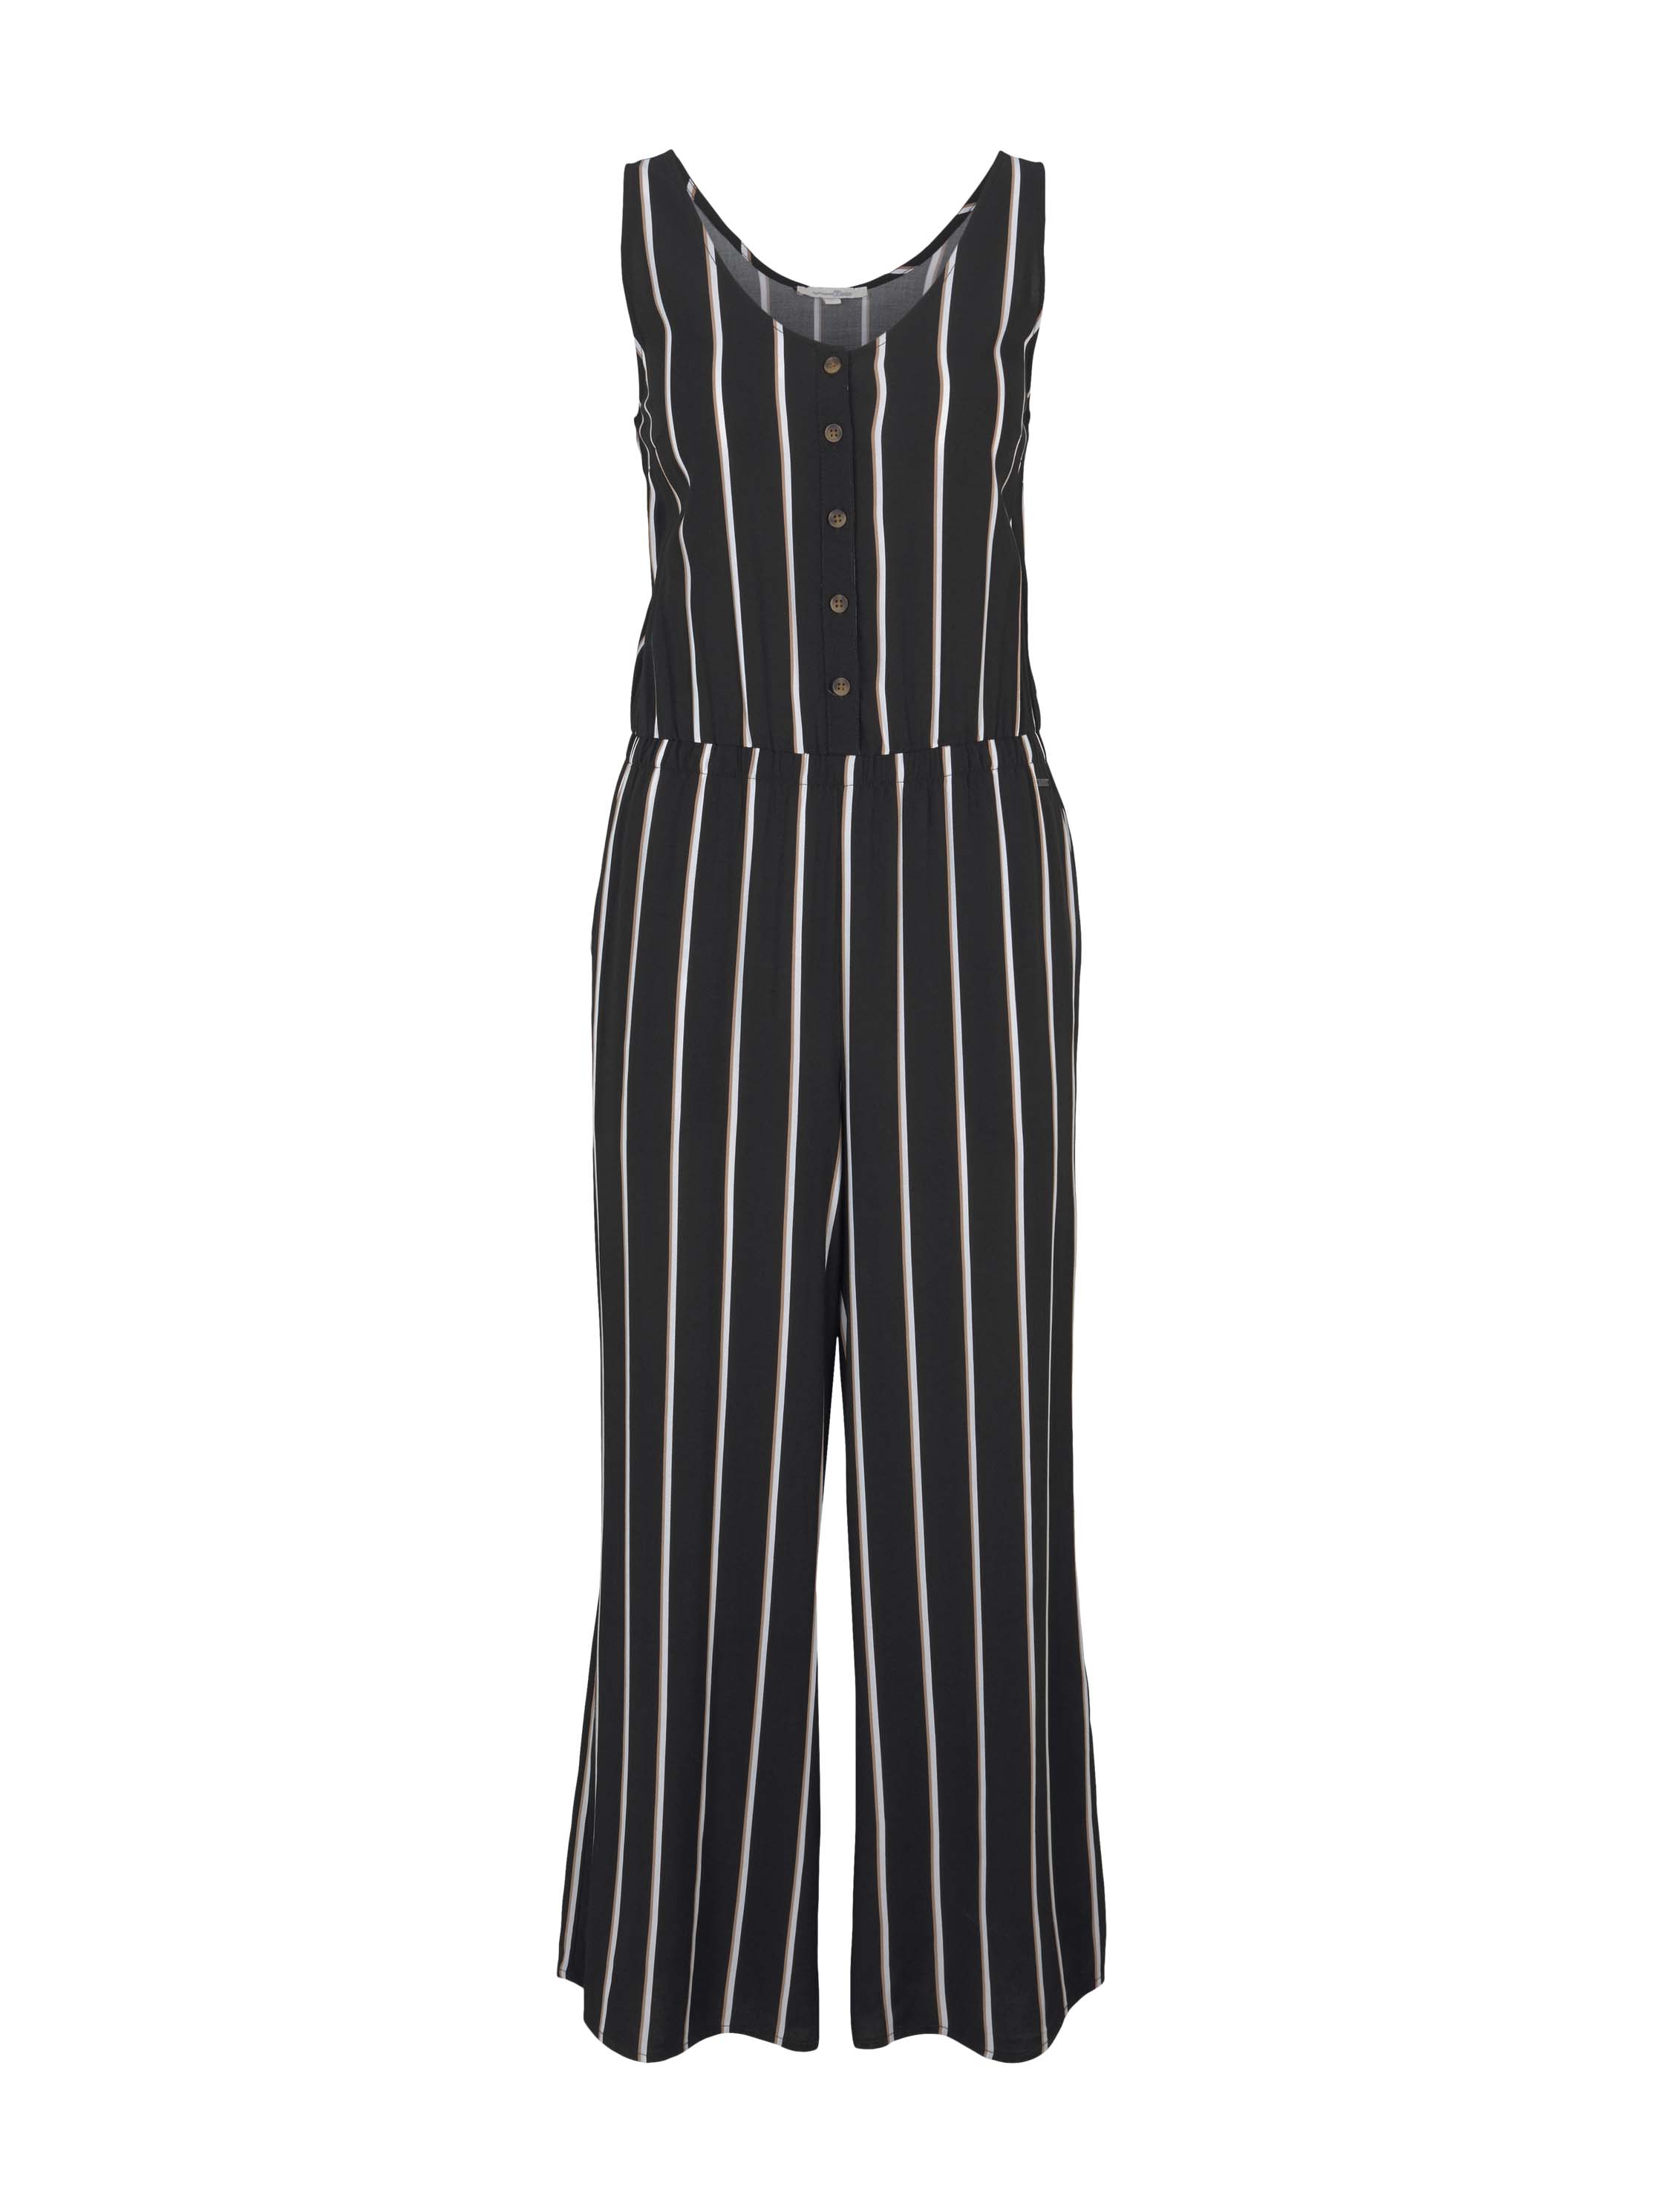 culotte overall, black beige vertical stripe